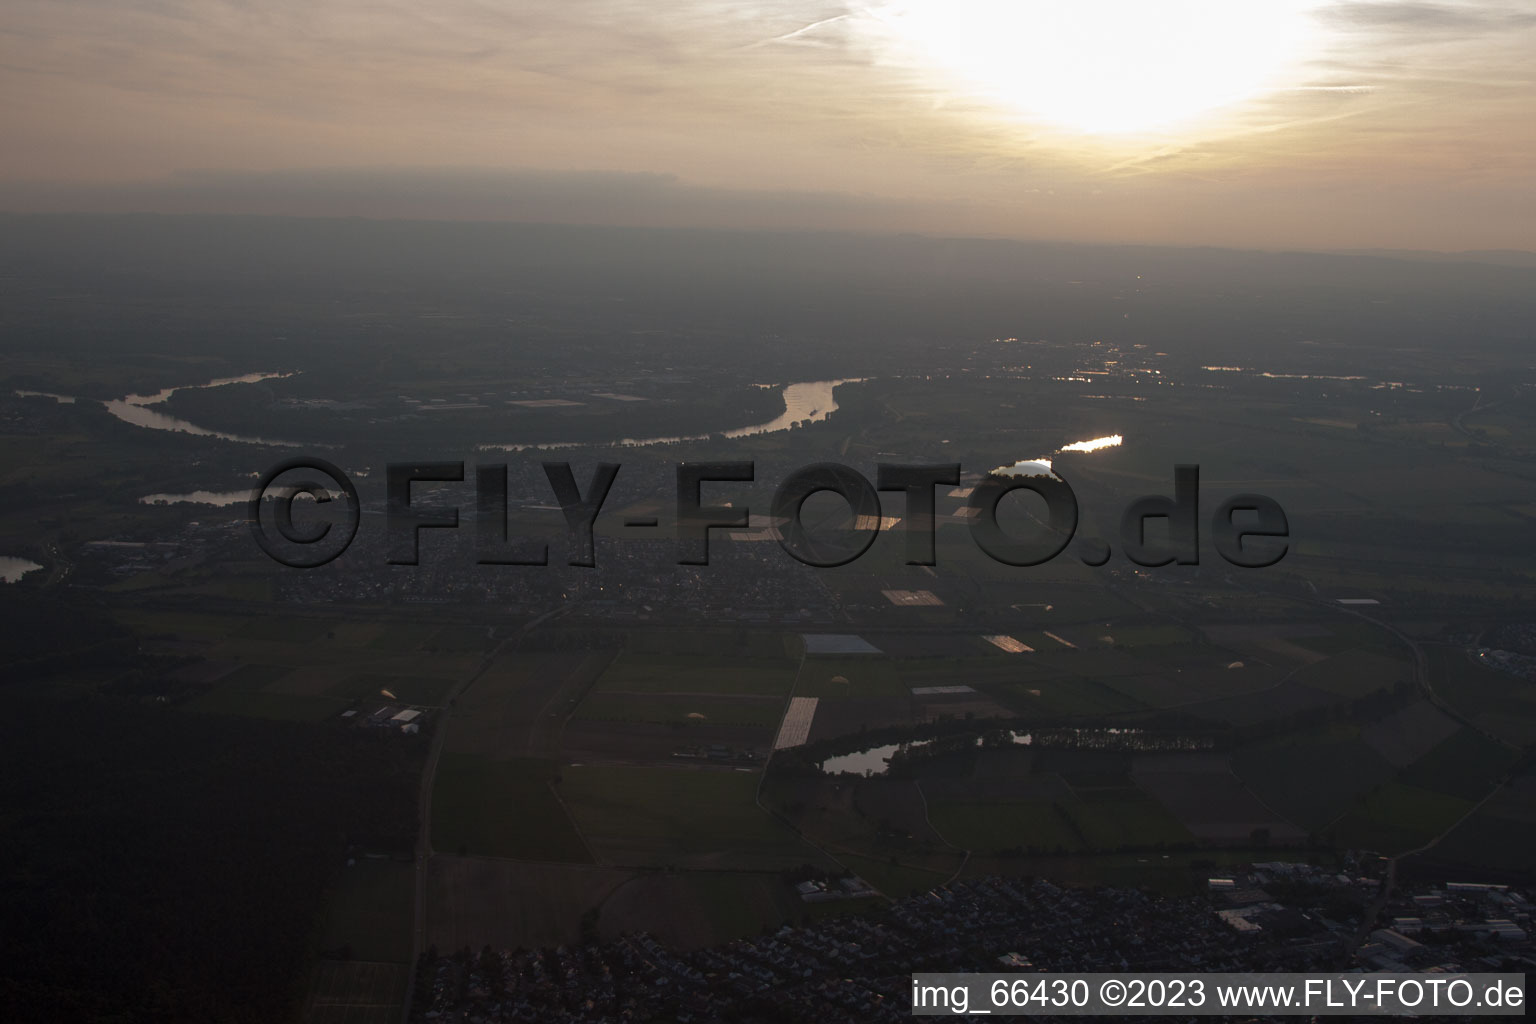 Altlußheim dans le département Bade-Wurtemberg, Allemagne vue du ciel